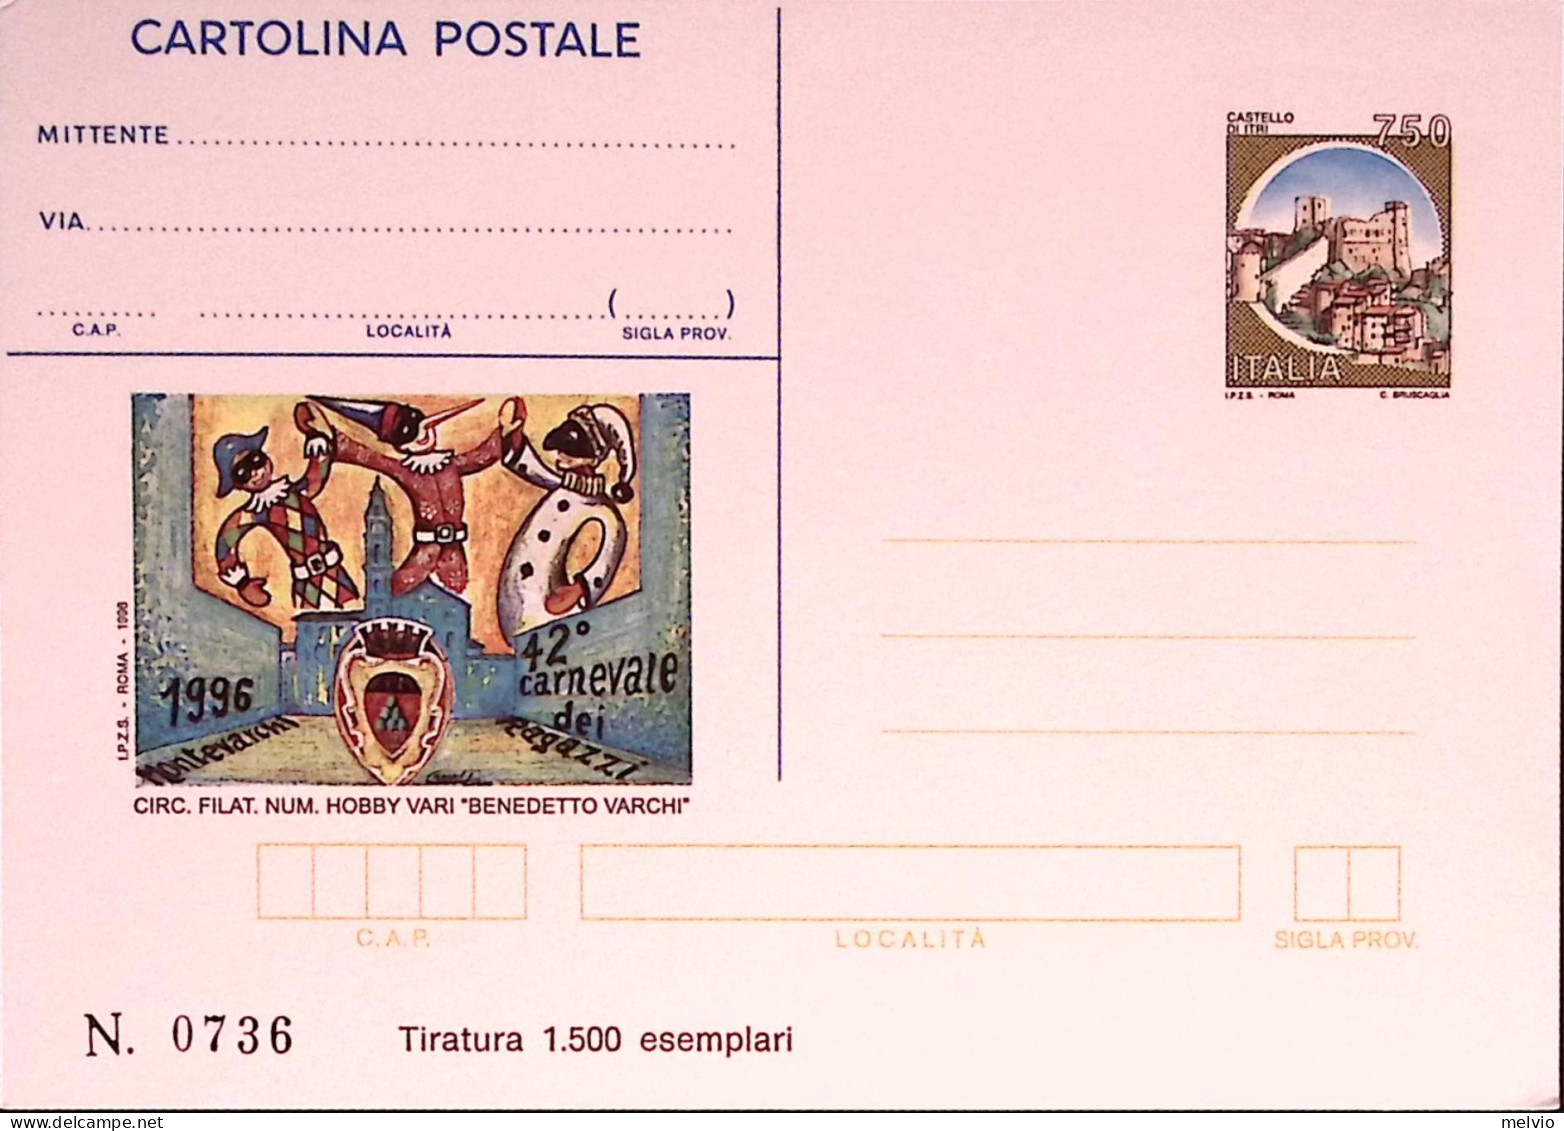 1996-MONTEVARCHI Cartolina Postale IPZS Lire 750 Nuova - Interi Postali